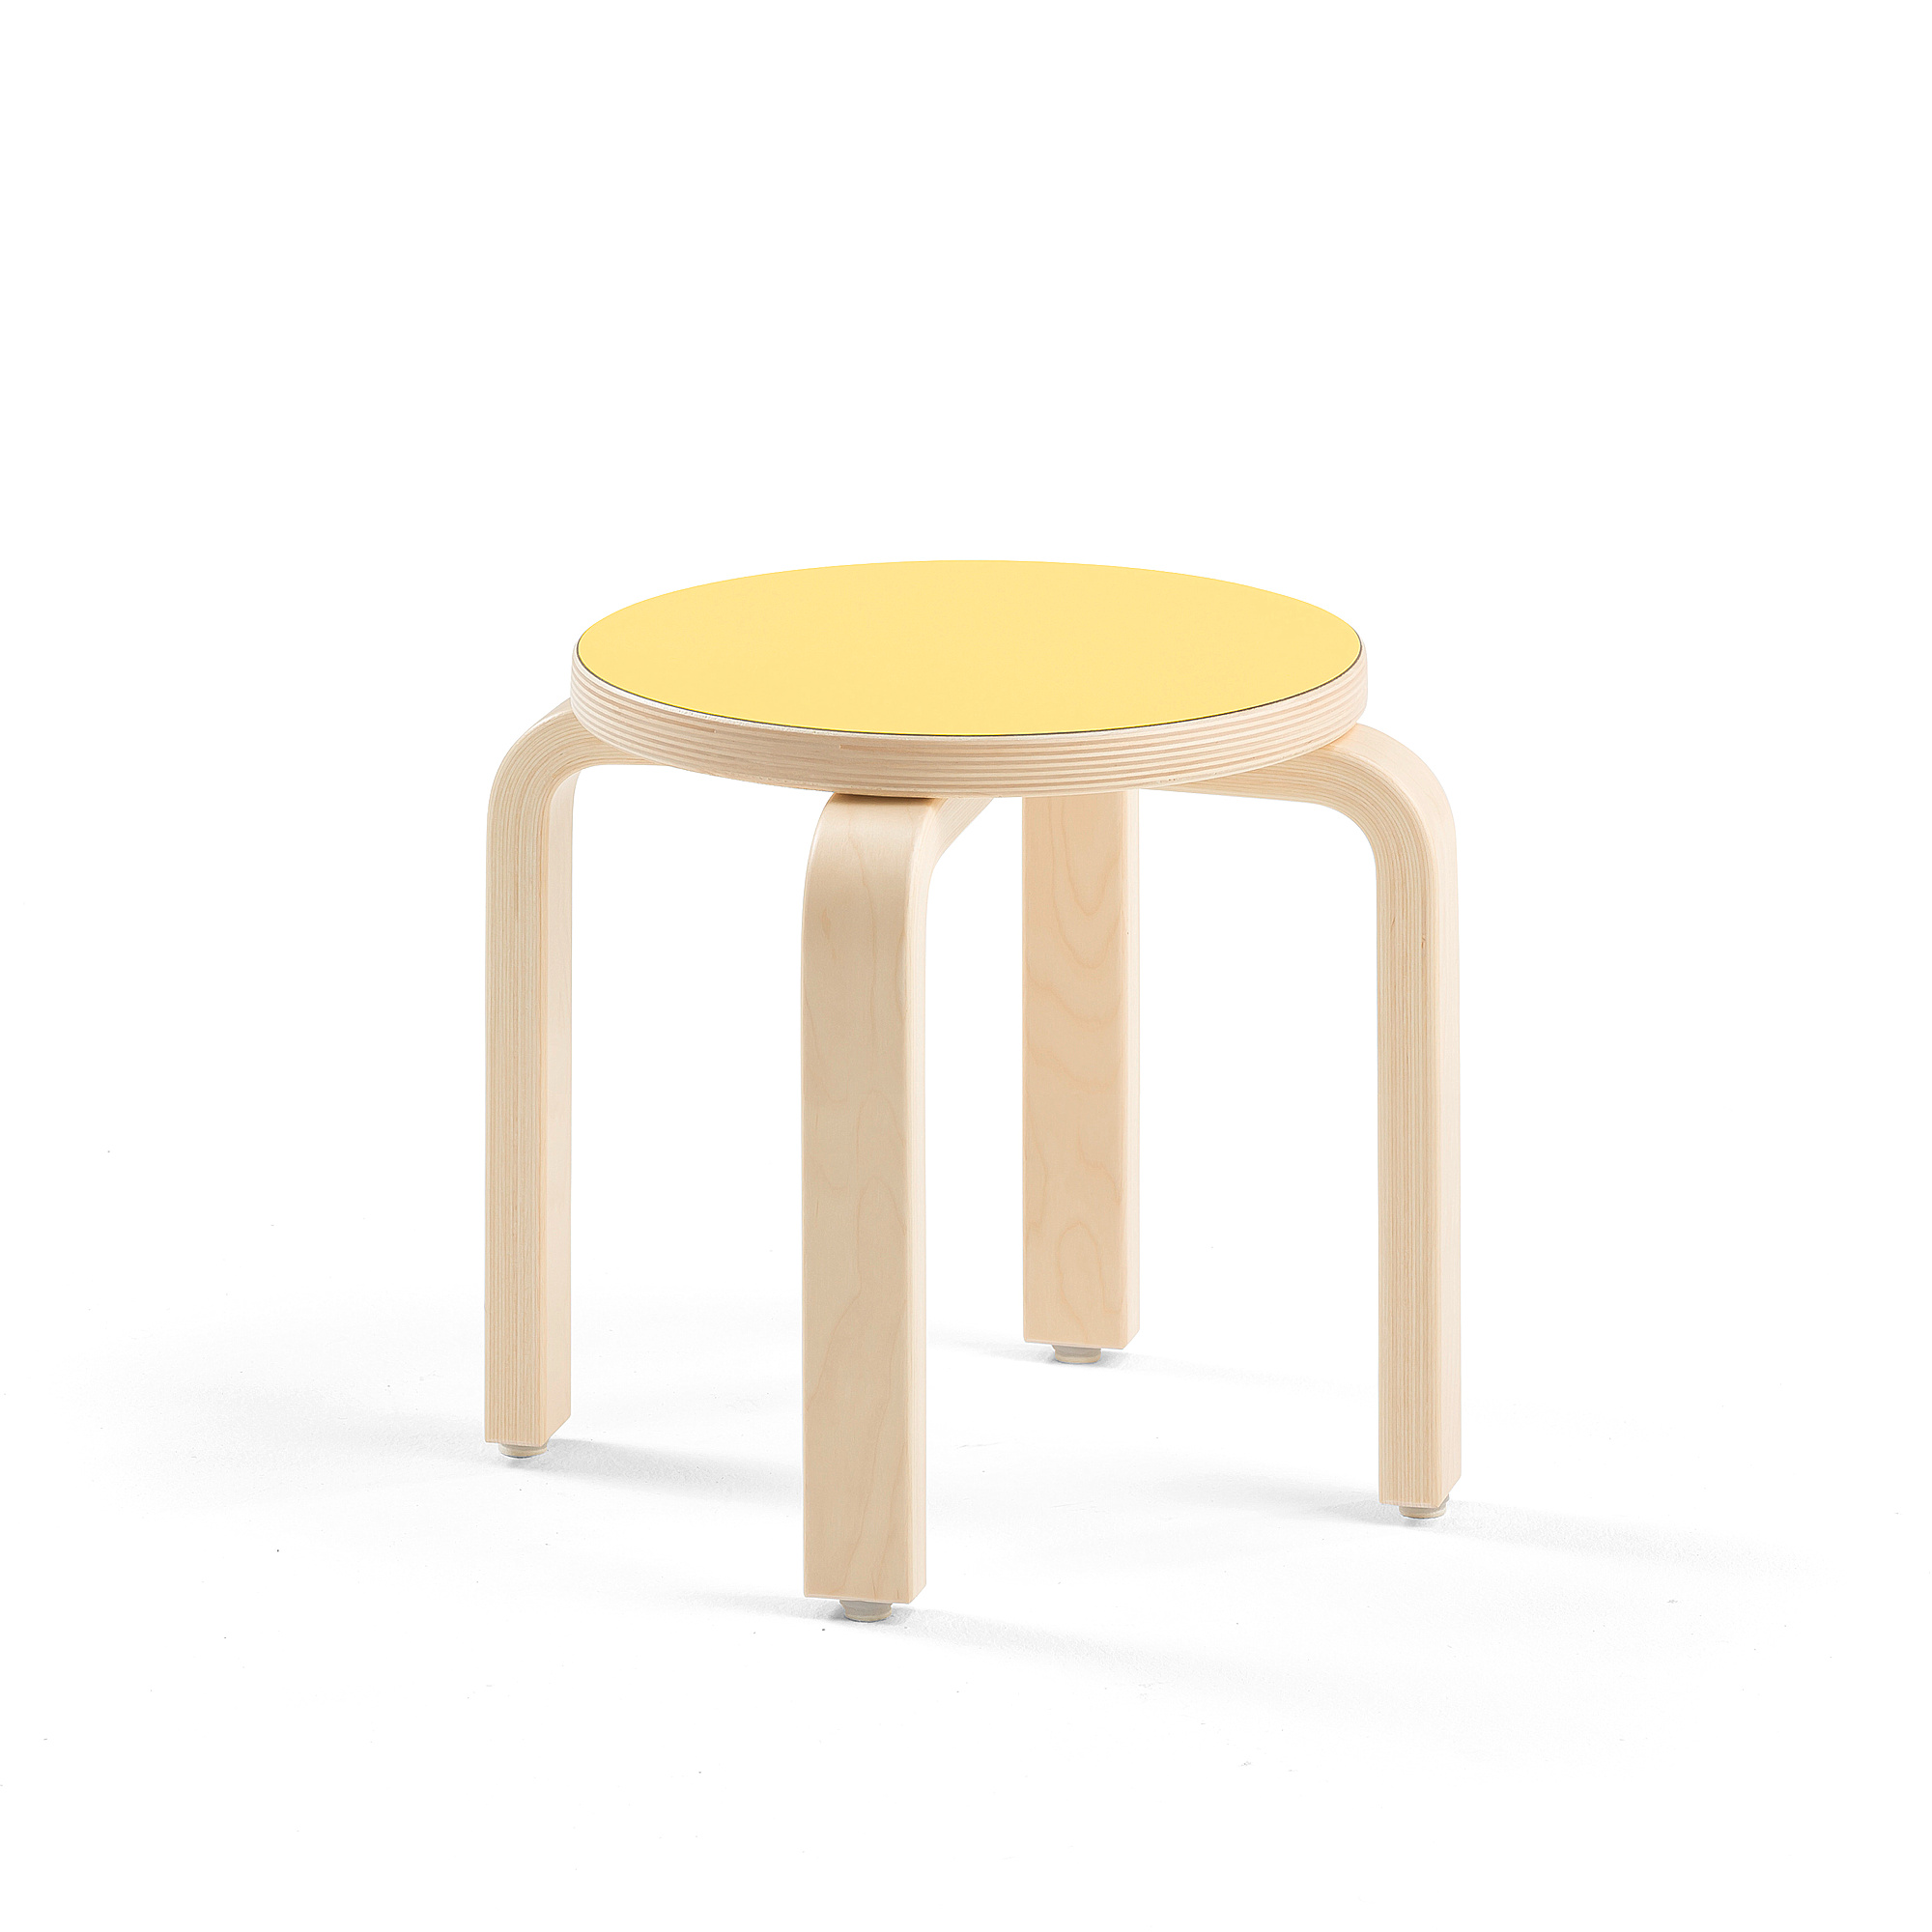 Dětská stolička DANTE, výška 310 mm, bříza/žlutá